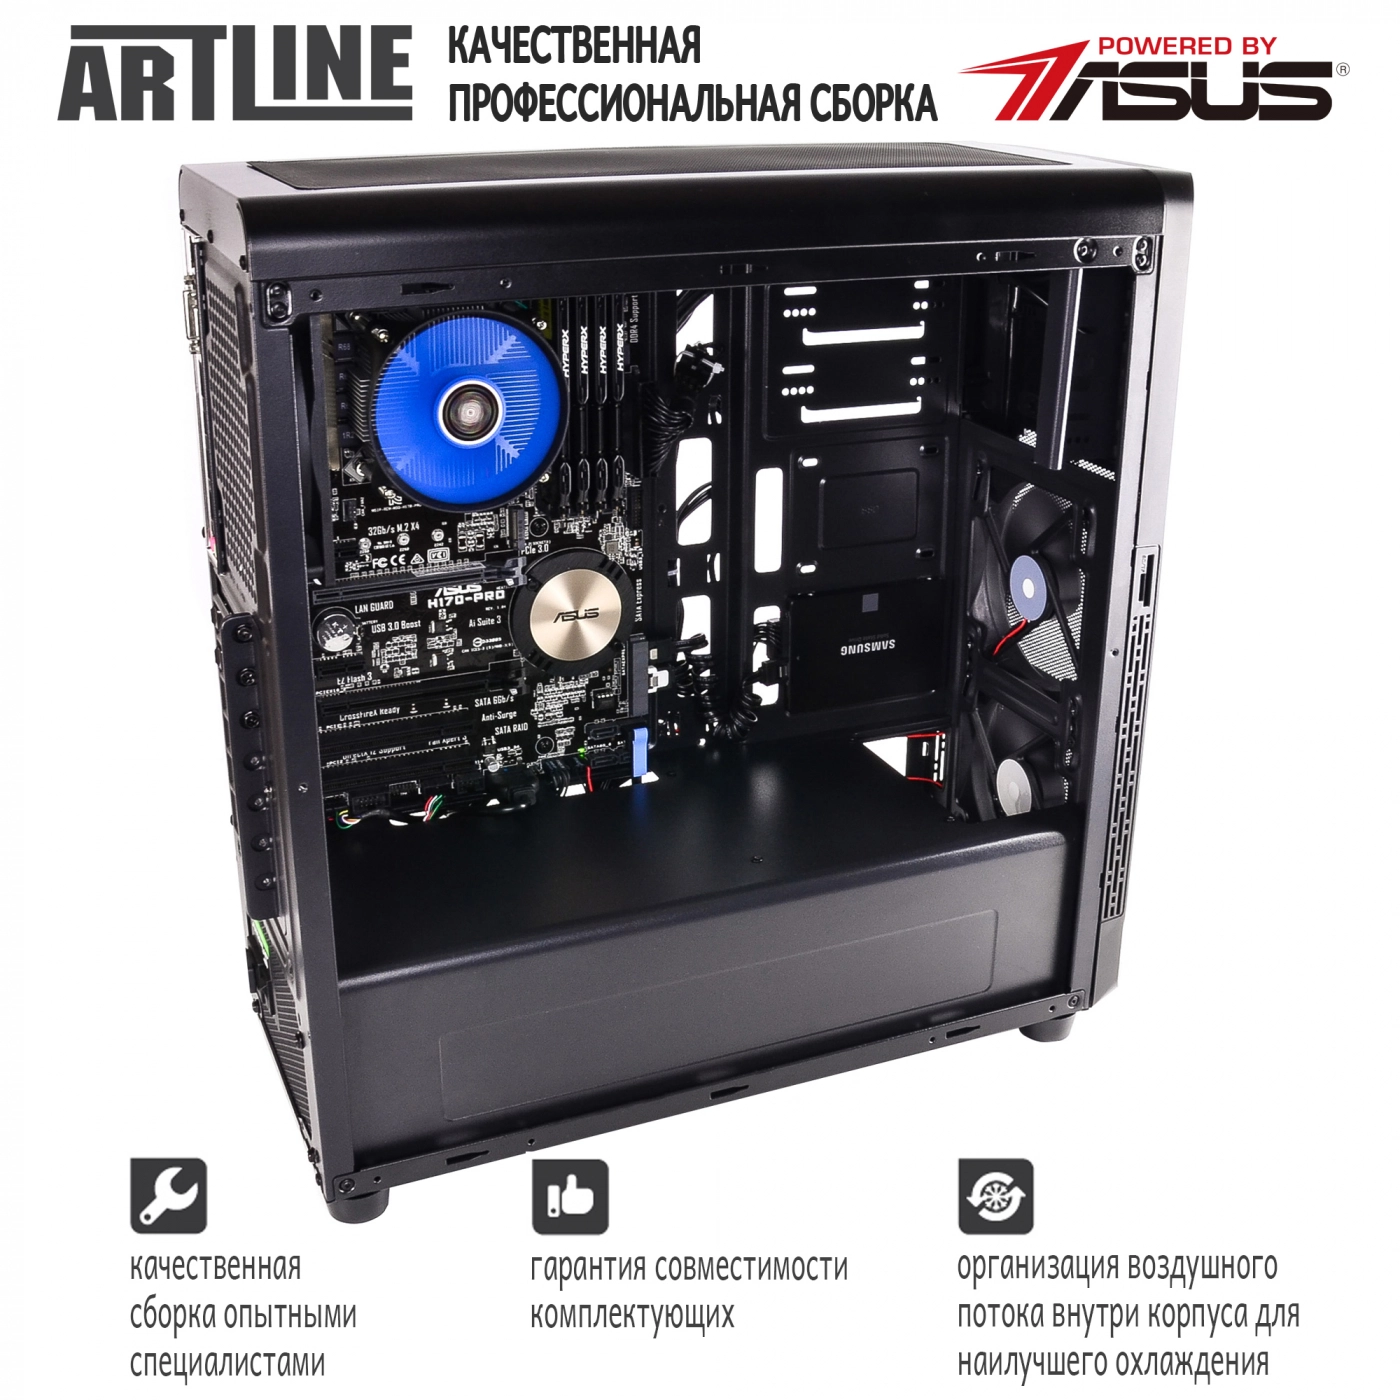 Купить Сервер ARTLINE Business T65v03 - фото 4